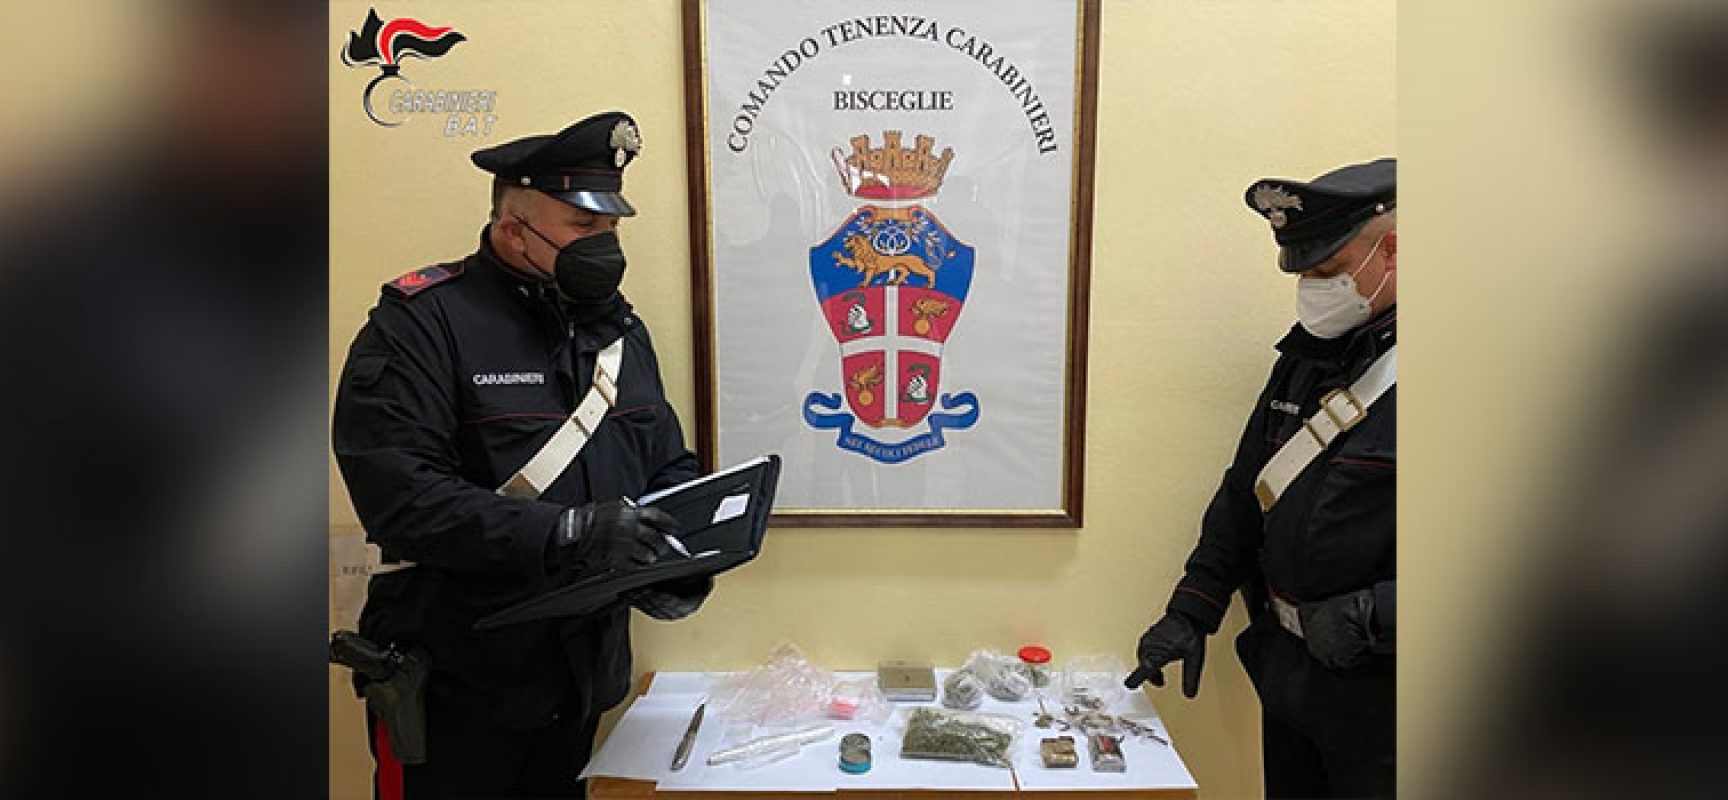 Trovato con hashish e marijuana in casa, arrestato a Bisceglie cittadino rumeno